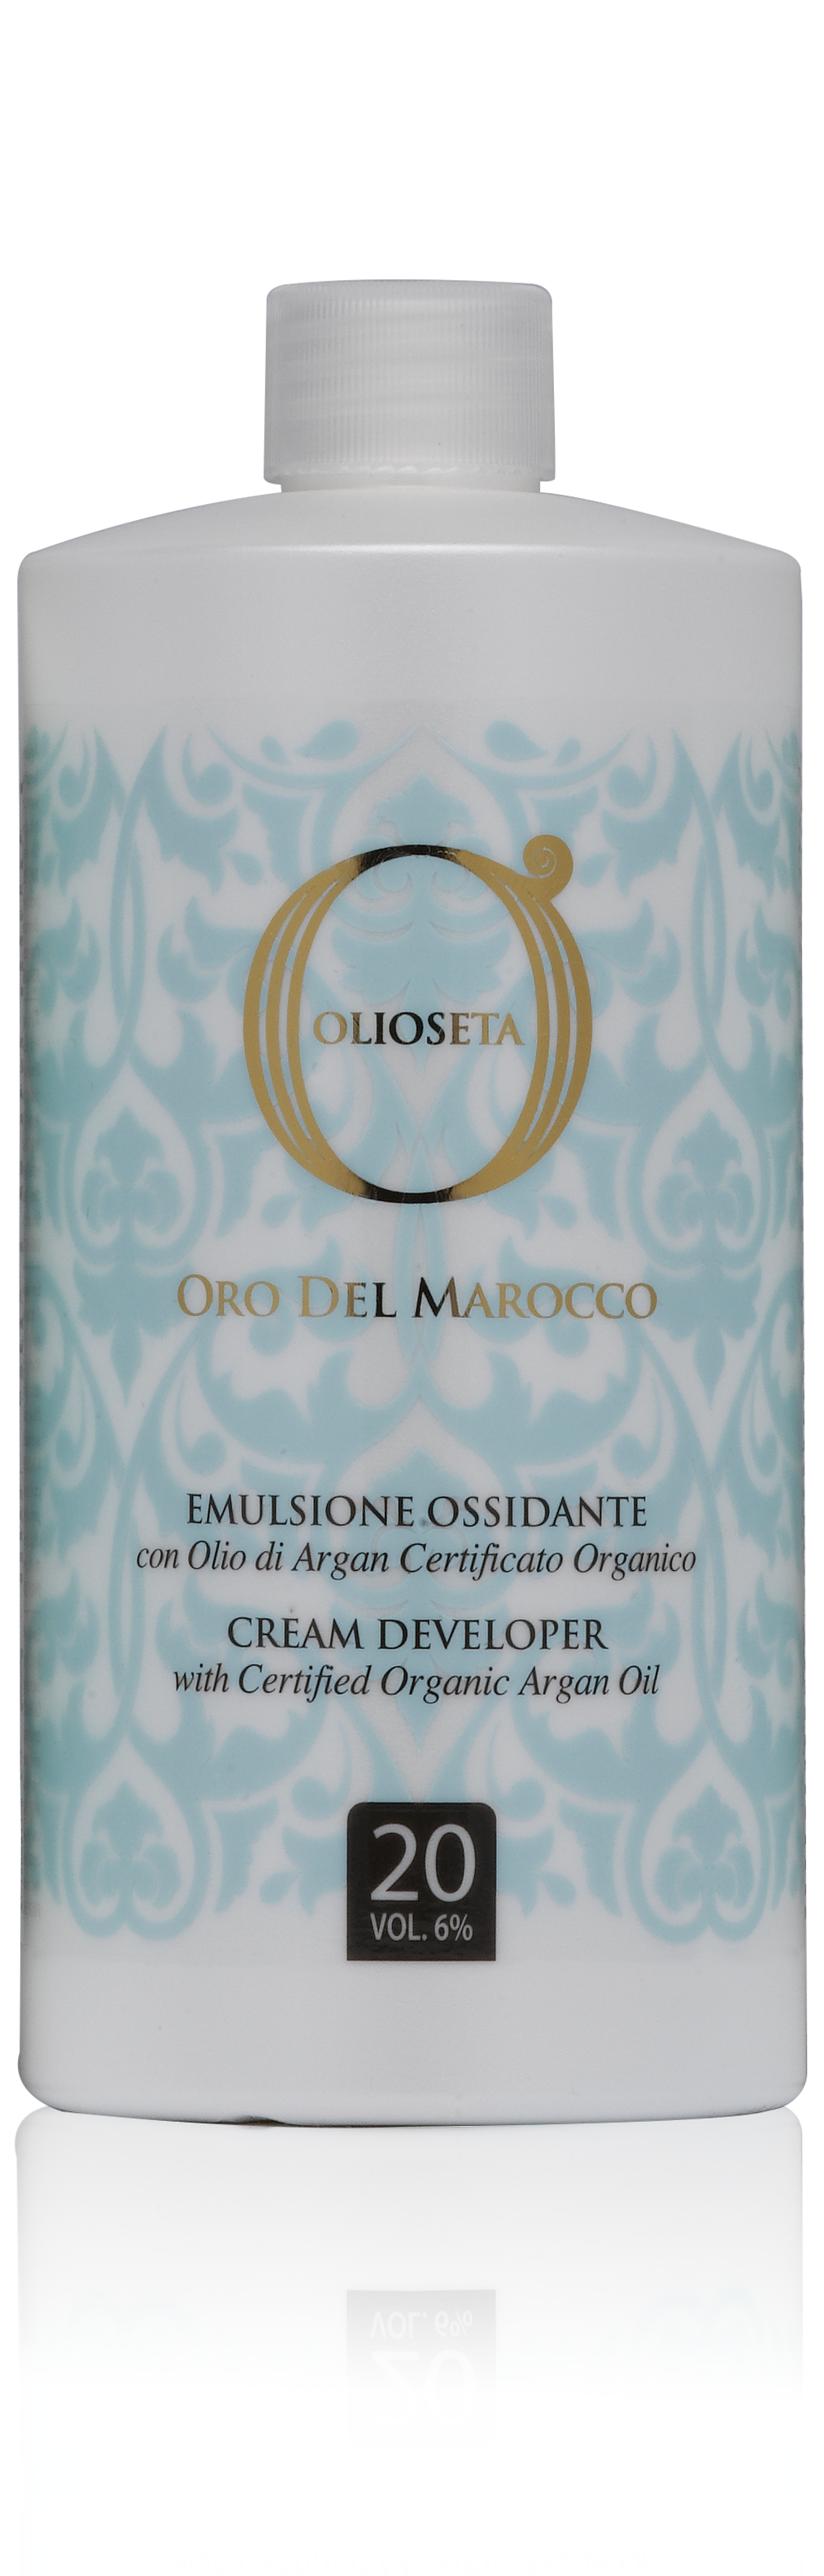 Barex olioseta oro del marocco эмульсионный оксигент с аргановым маслом 6% 750мл